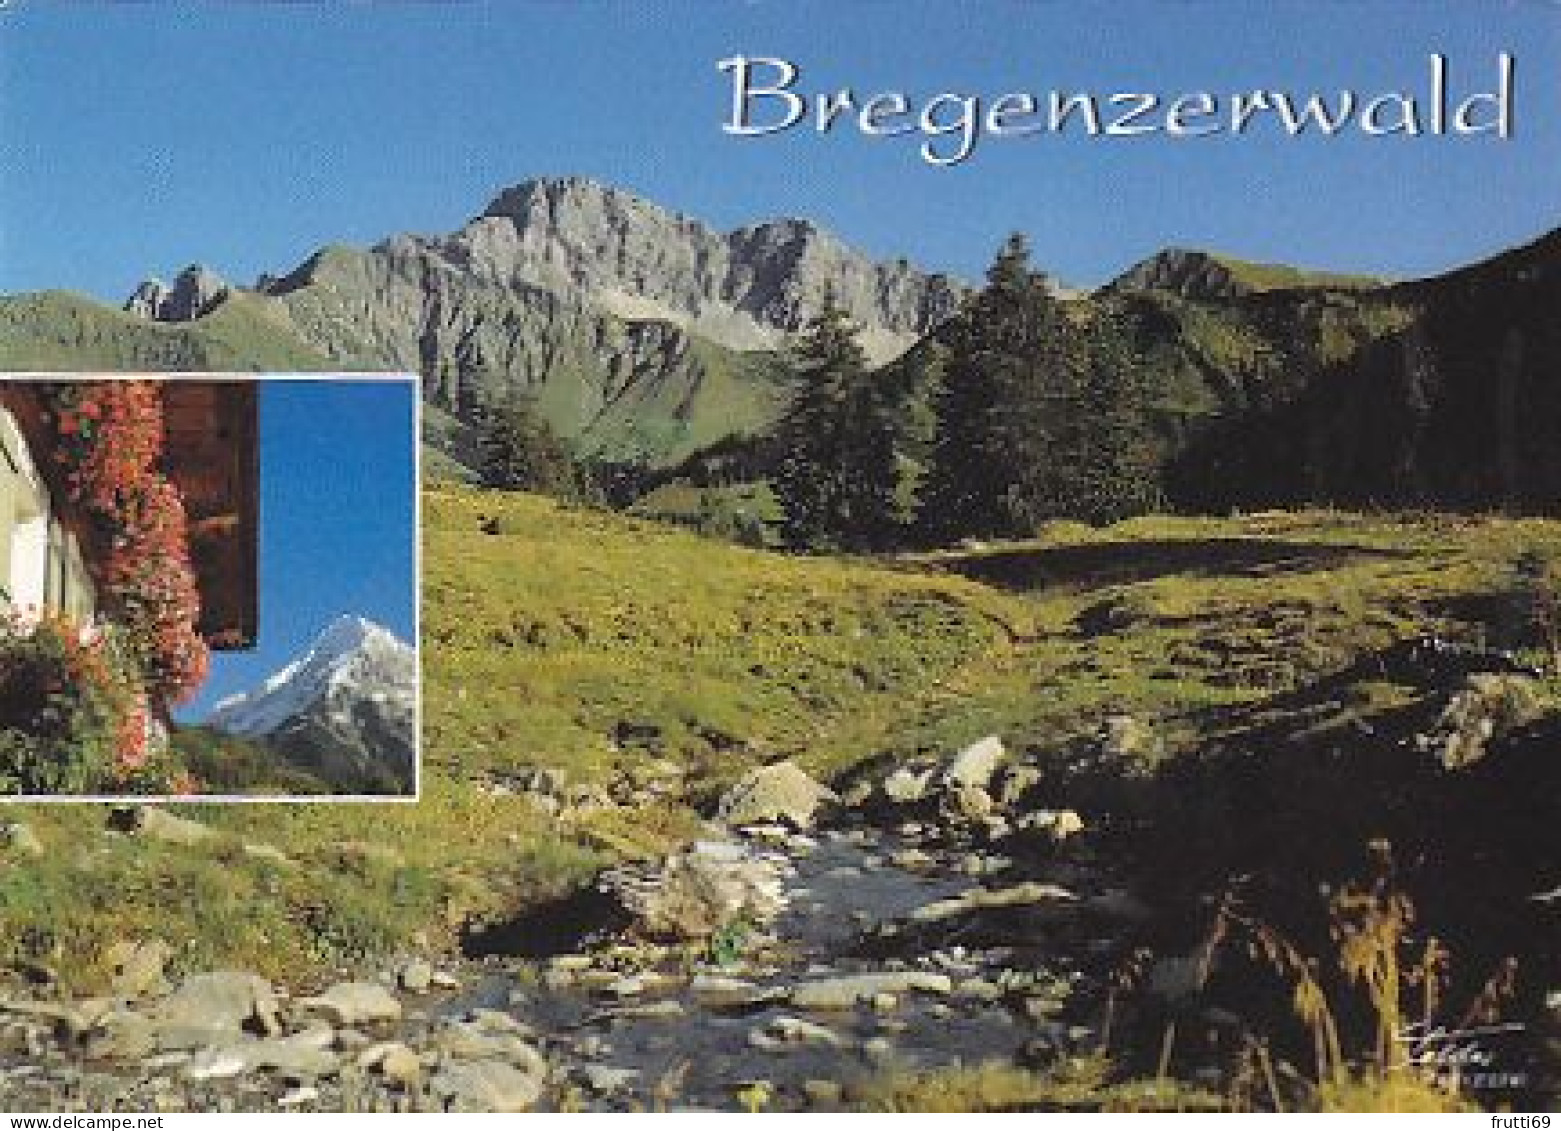 AK151499 AUSTRIA - Bregenzerwald - Bregenzerwaldorte